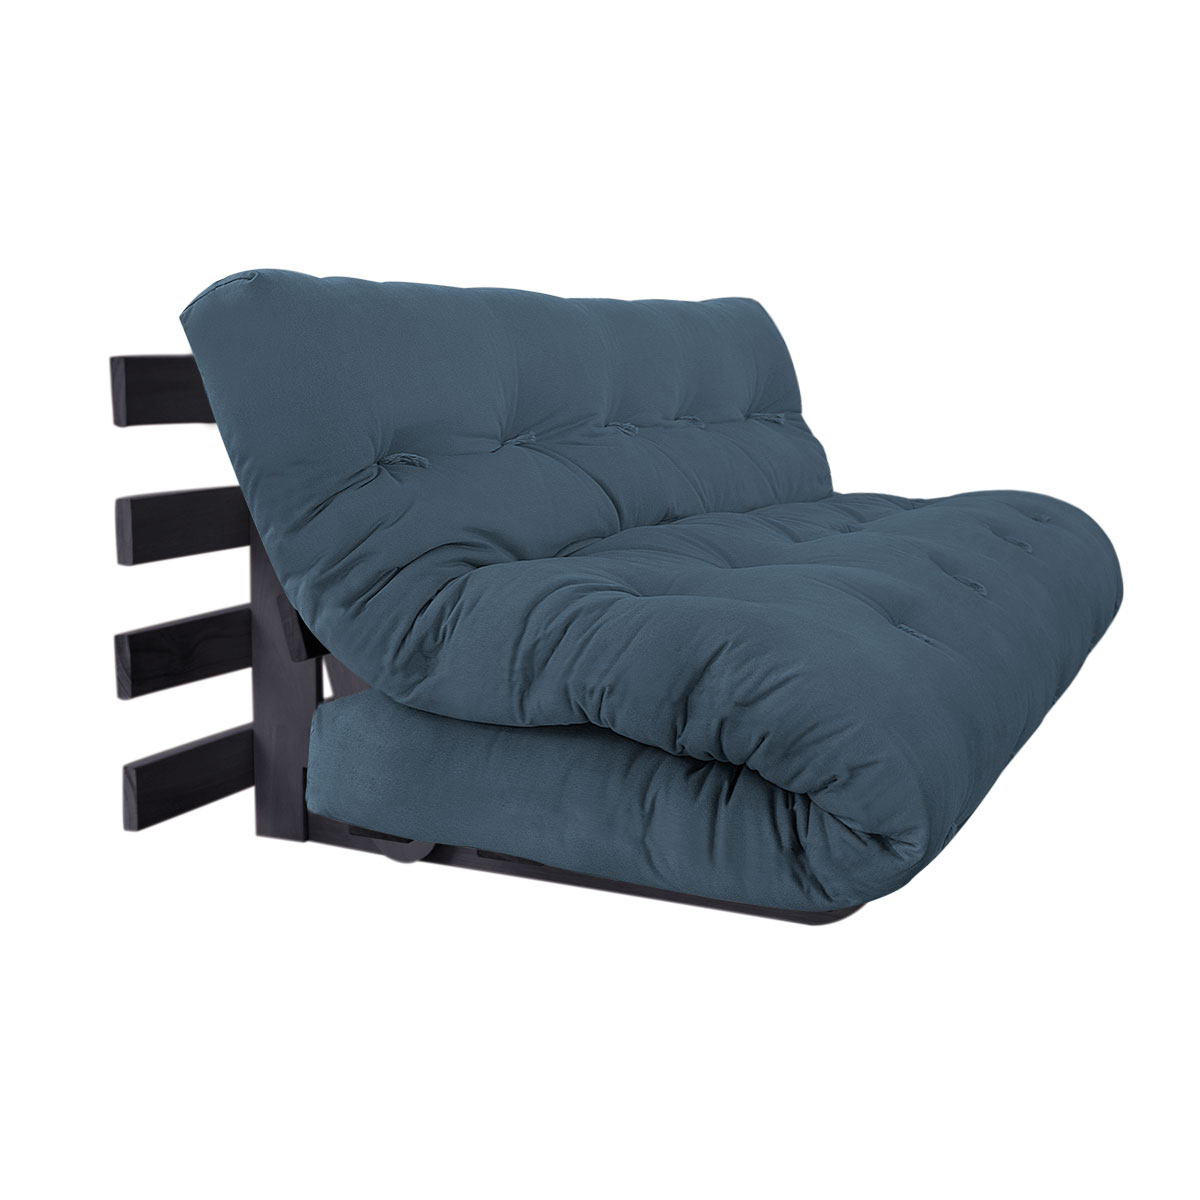 sofa cama joy 160 madeira eucalipto tabaco tecido sarja peletizada azul delave 02